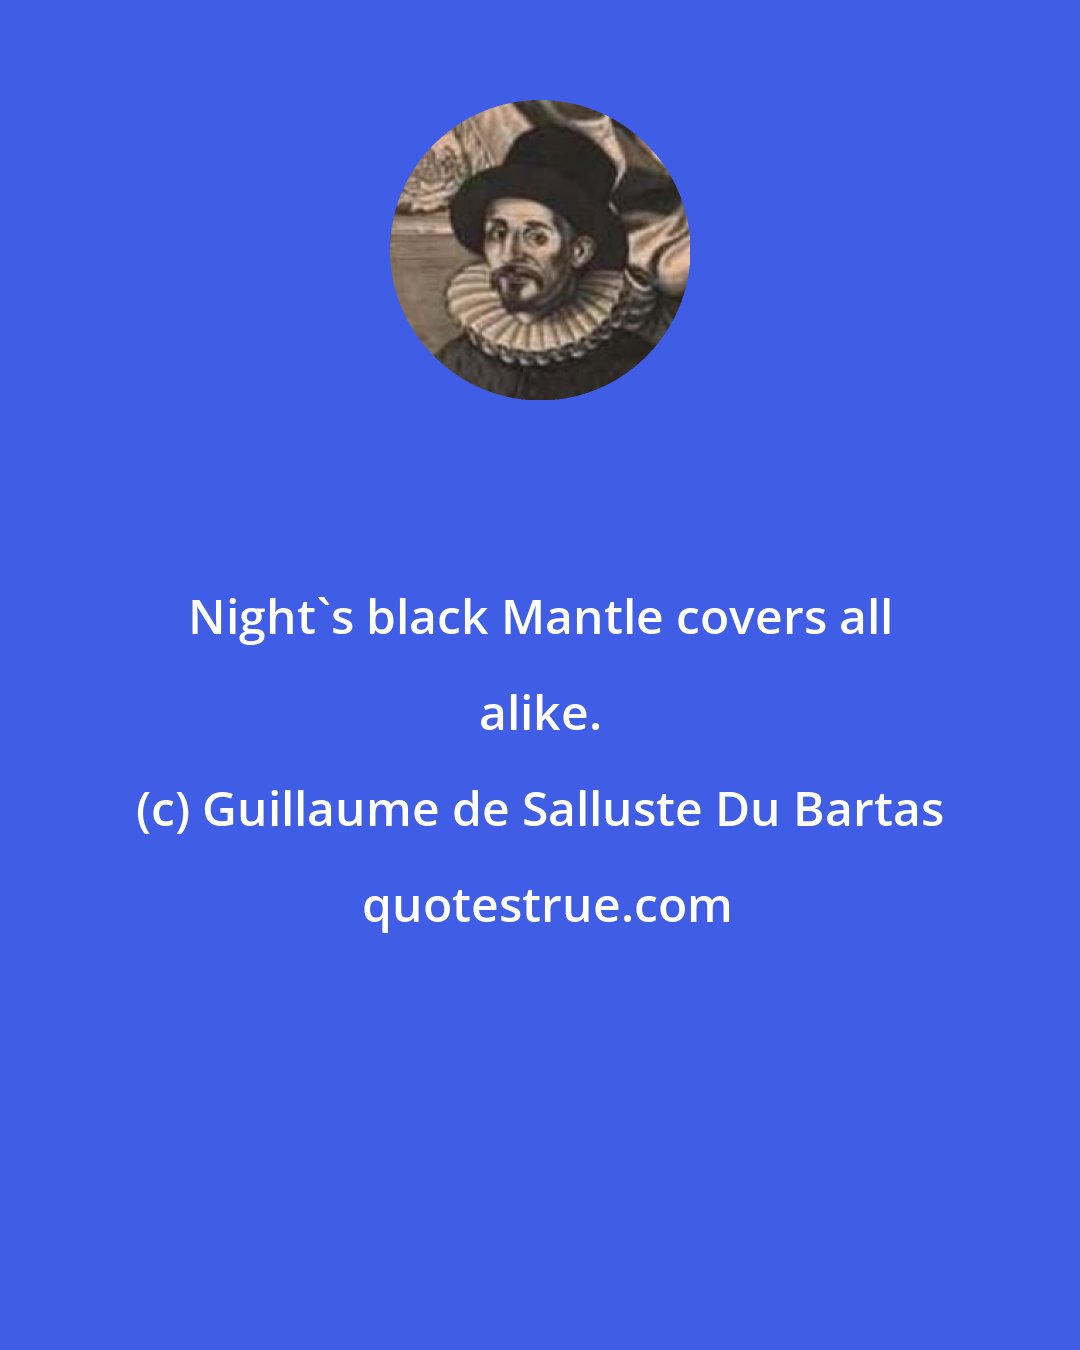 Guillaume de Salluste Du Bartas: Night's black Mantle covers all alike.